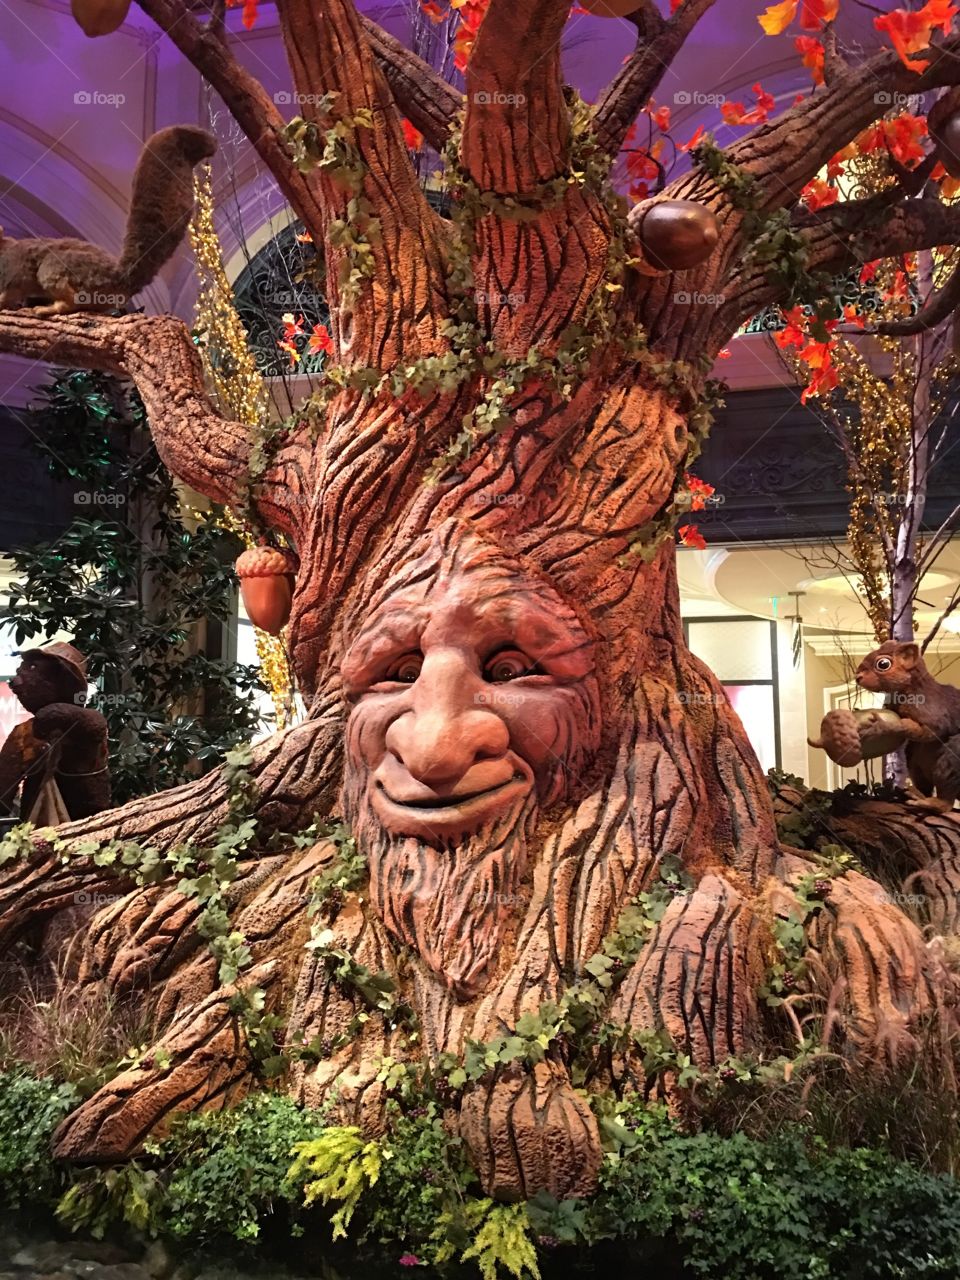 Magical tree at the Bellagio exhibit Las Vegas 